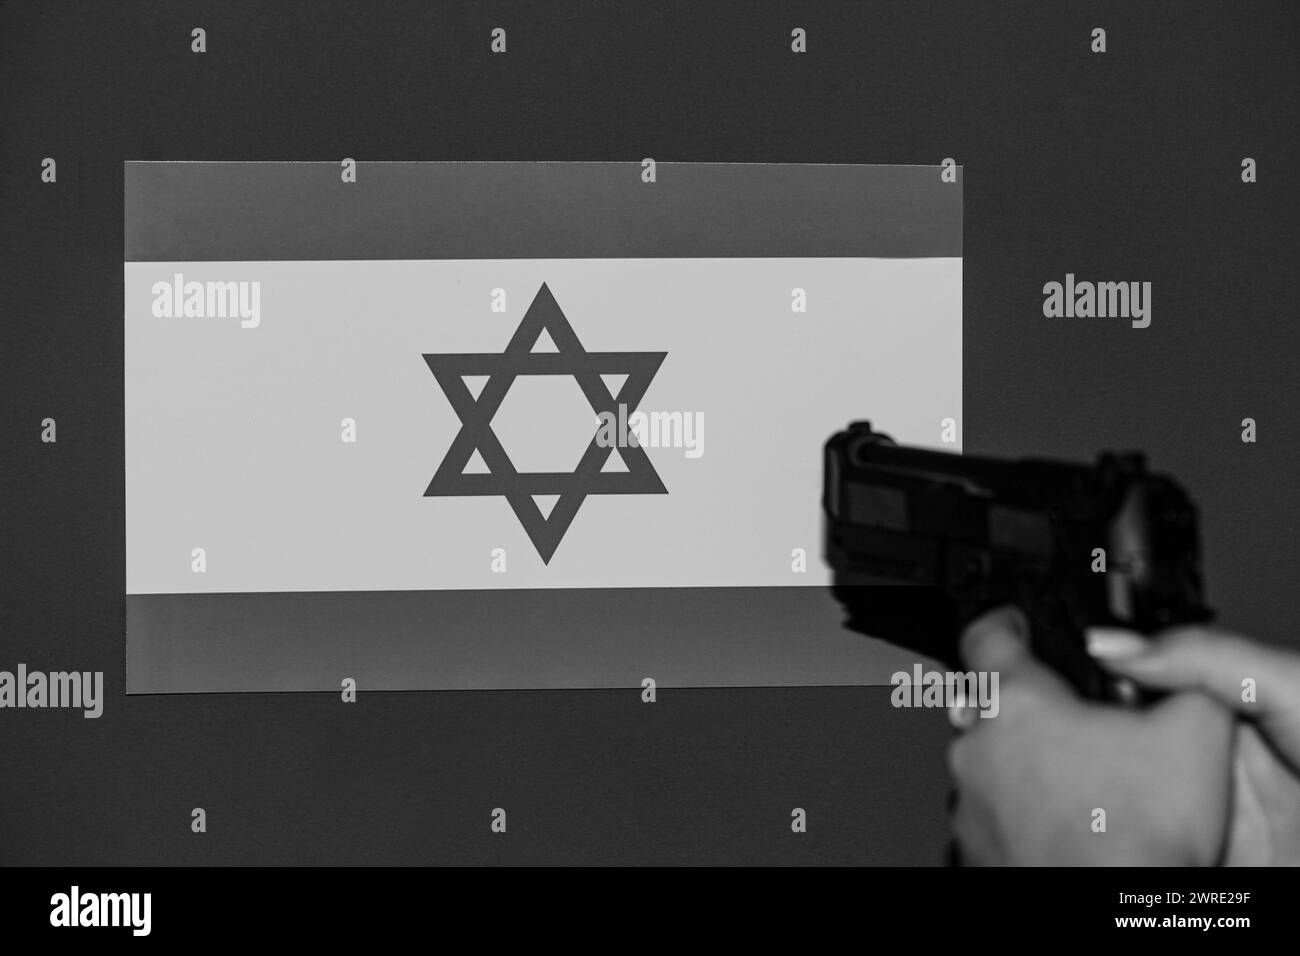 Flaggen von Israel und Palästina gemalt auf gerissenem Mauerhintergrund. Konzept des Konflikts zwischen Israel und den palästinensischen Behörden. Hohe Qualität Stockfoto